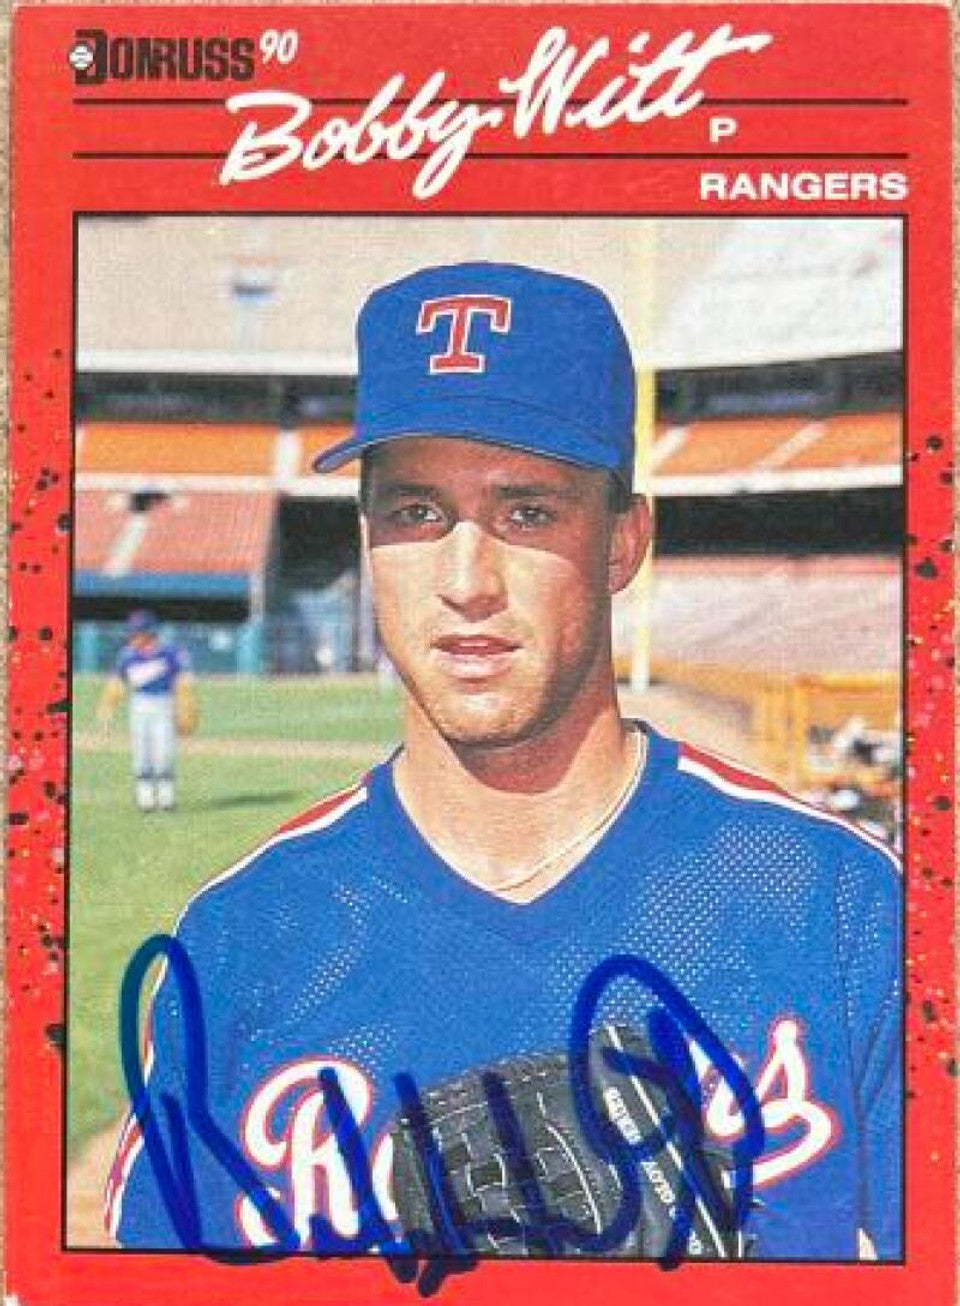 Bobby Witt Signed 1990 Donruss Baseball Card - Texas Rangers